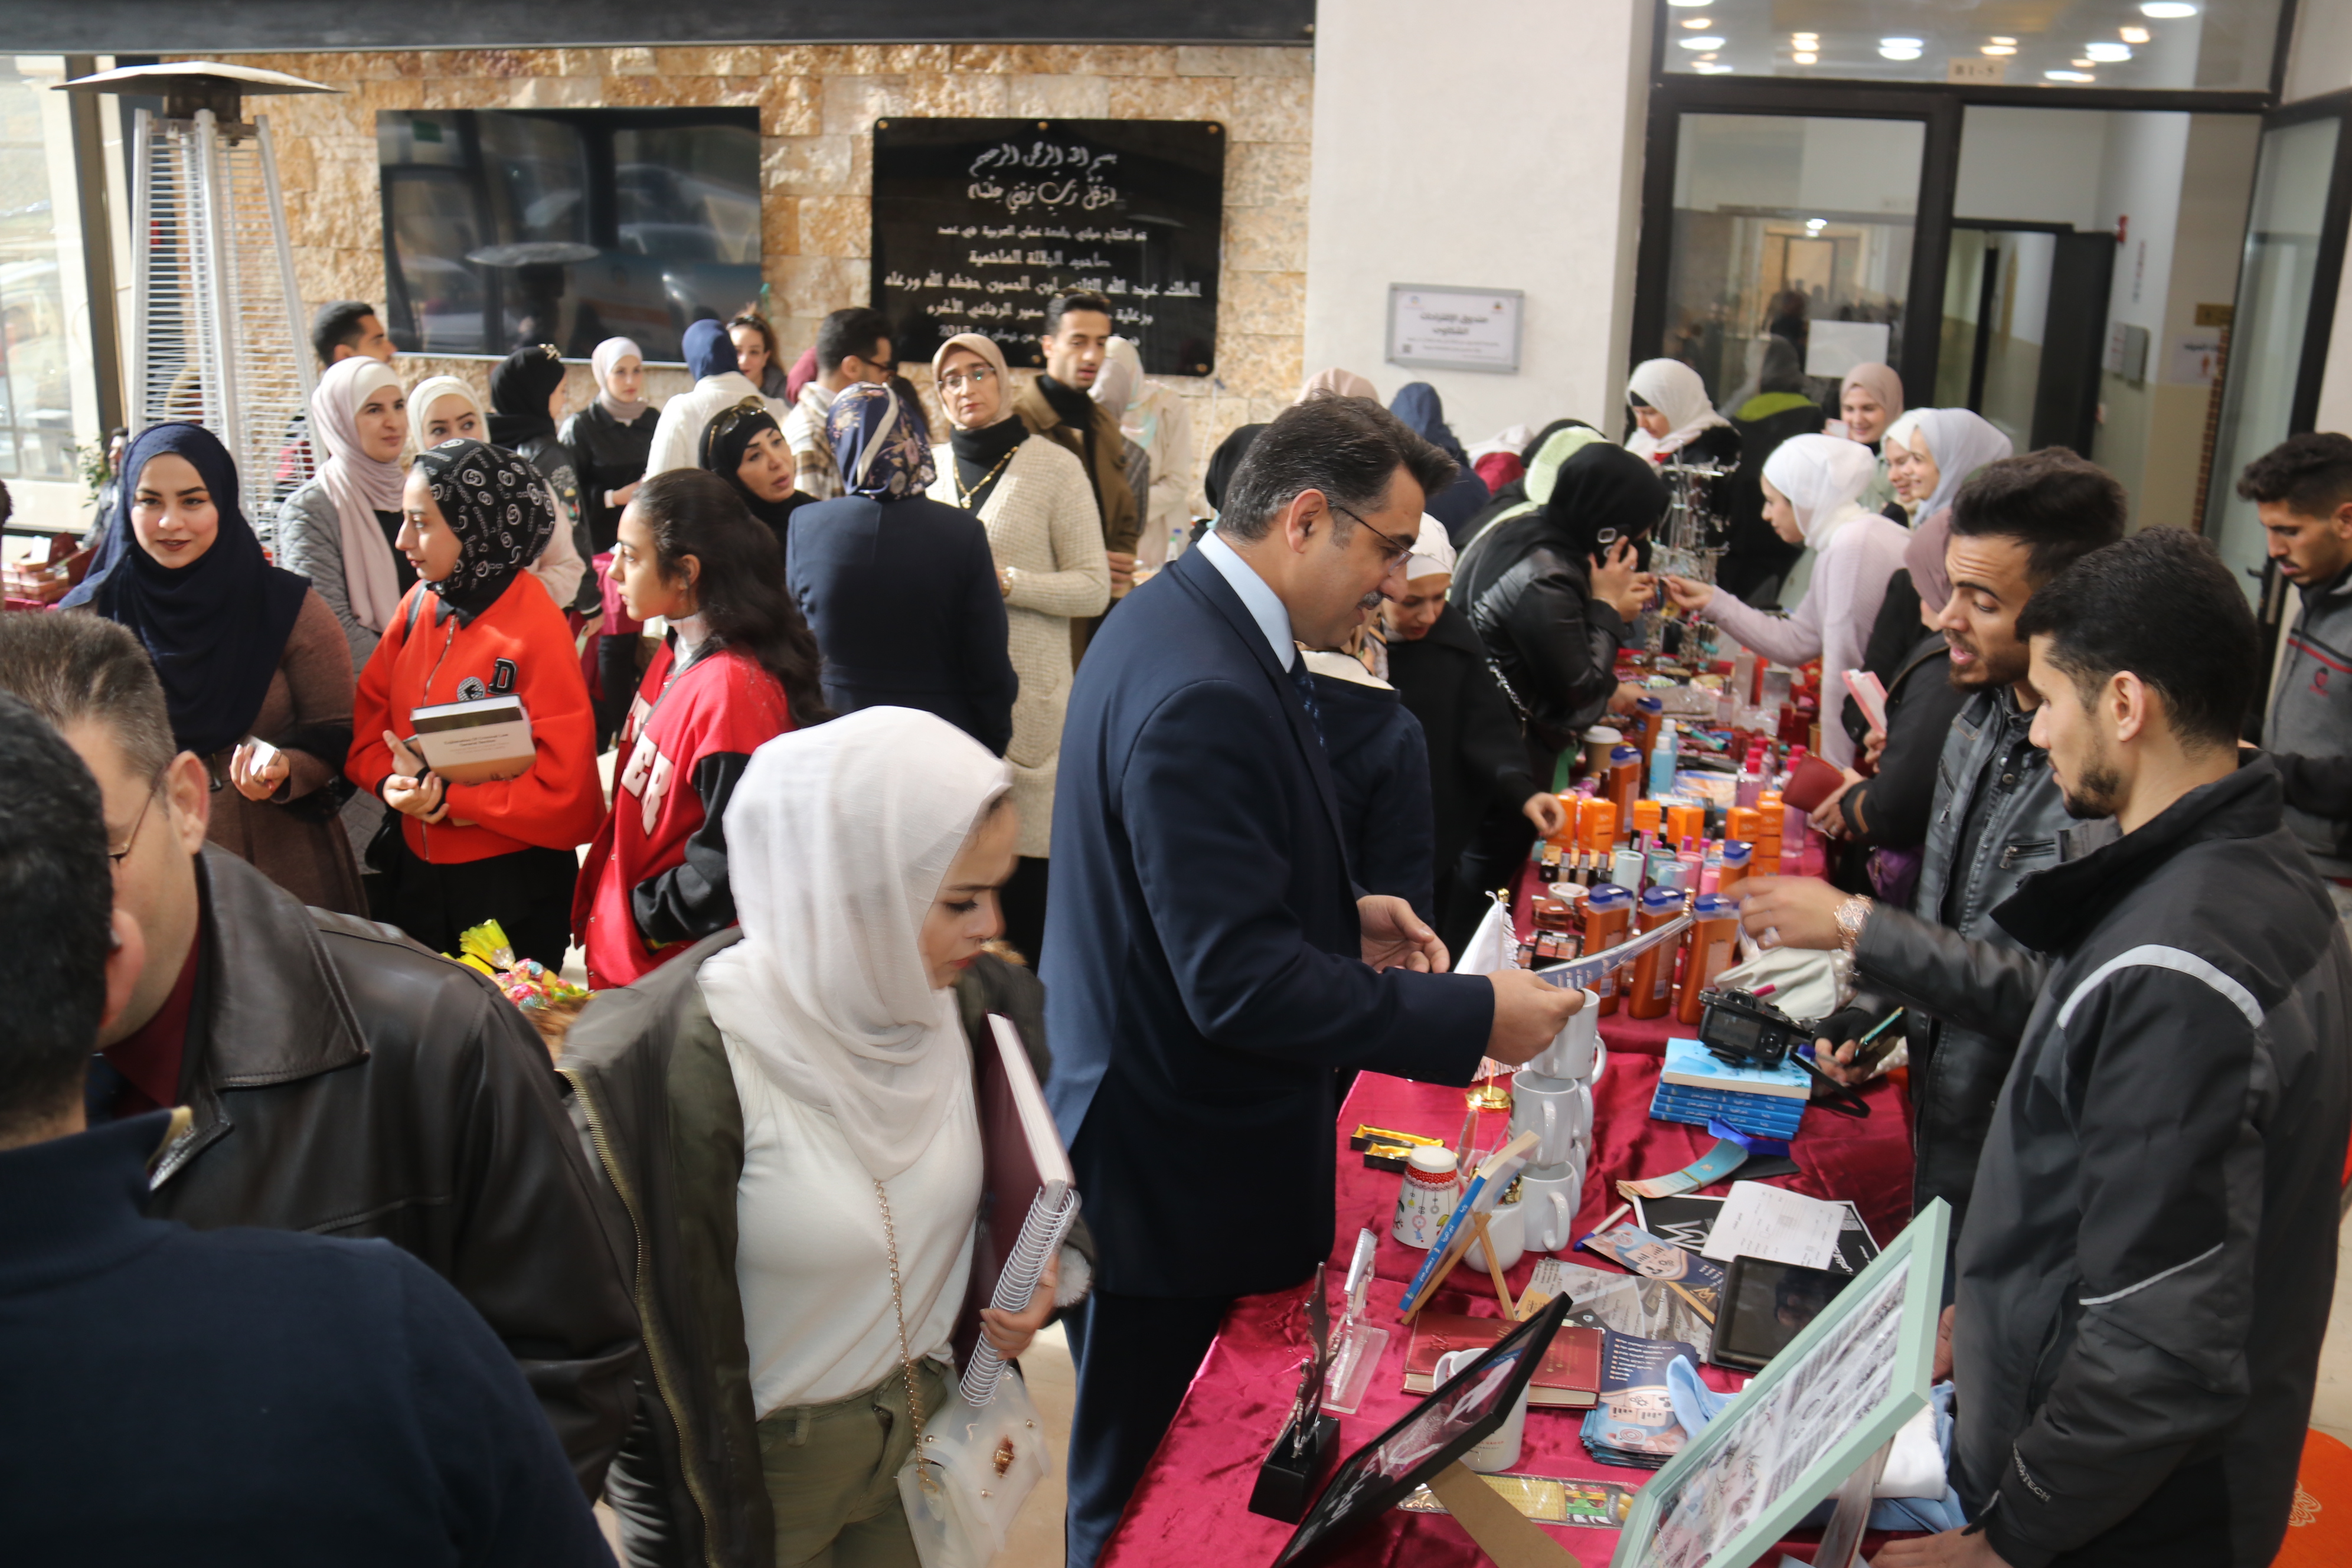 بازار أصحاب المشاريع الصغيرة لطلبة جامعة عمّان العربية5